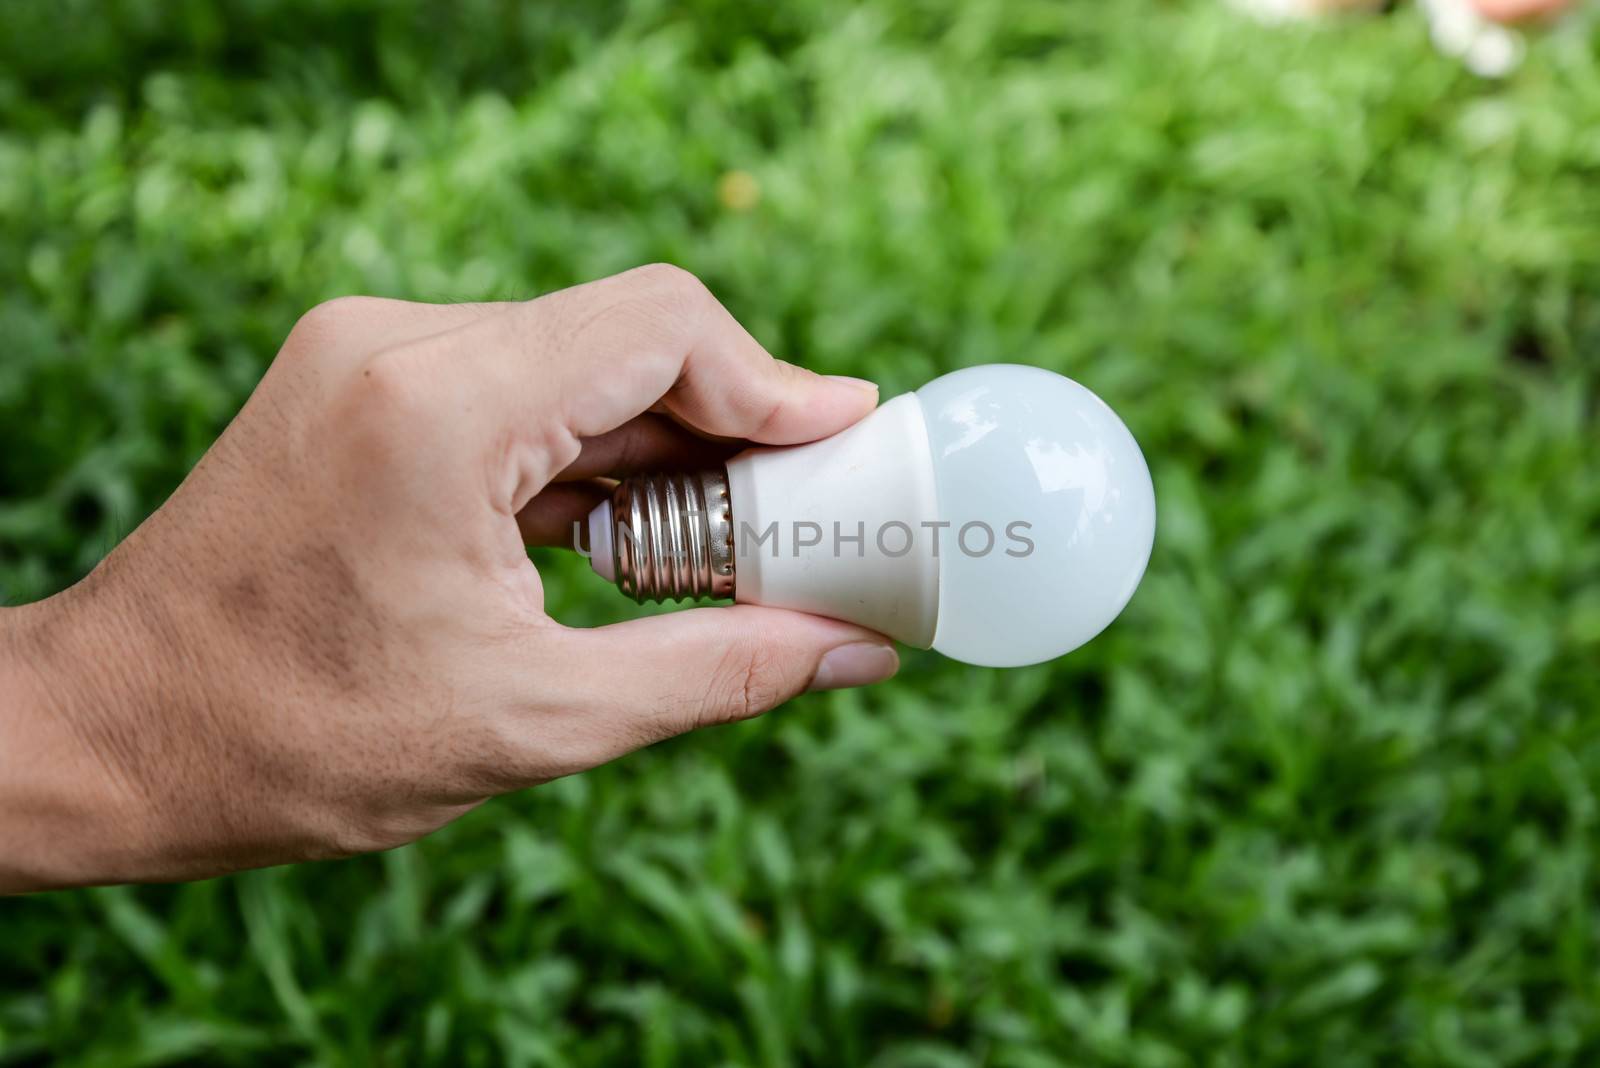 LED bulb - New technology of bulb